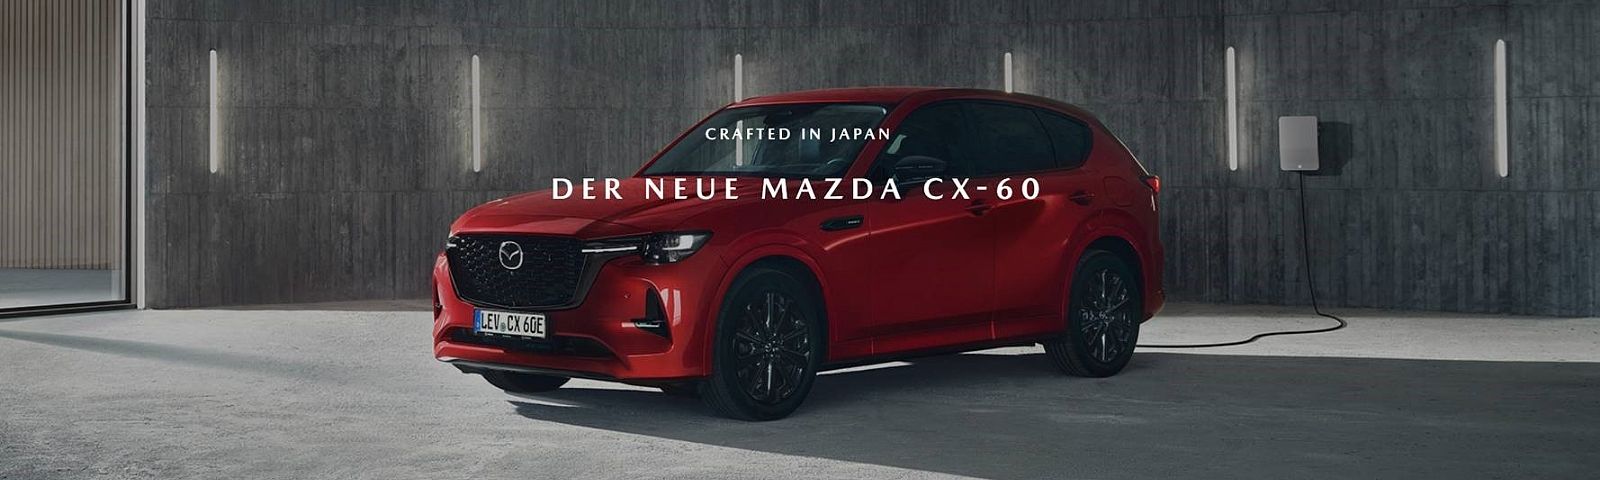 Der neue Mazda CX-60 rot